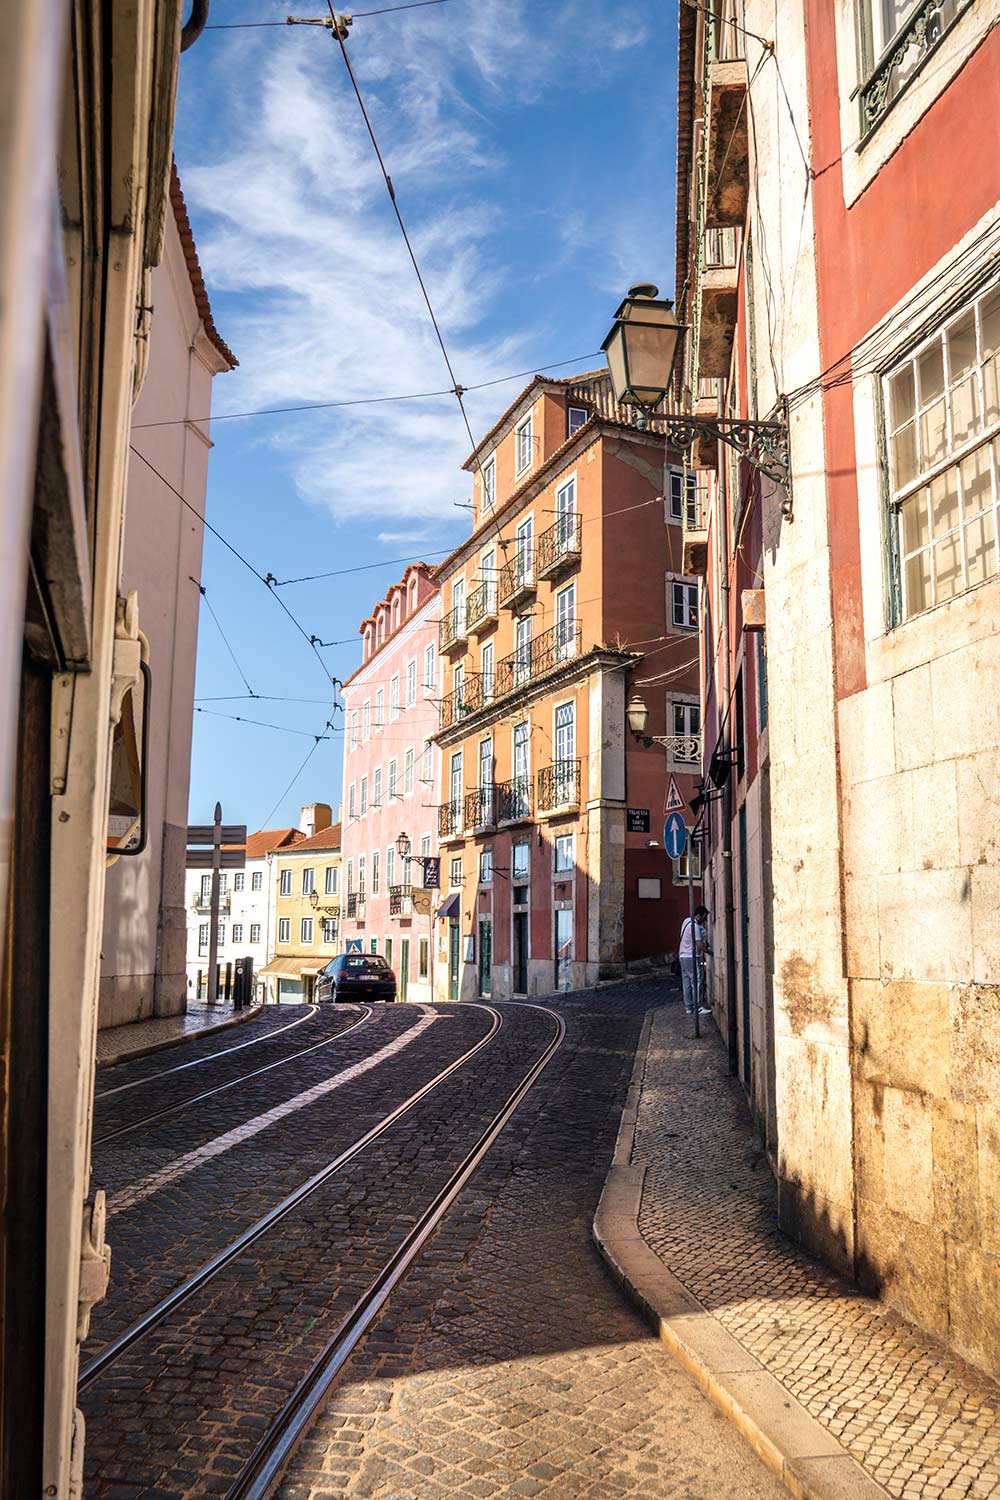 Tram 28 Lisbon - Tips for Travelling on  Lisbon’s Historic Tram